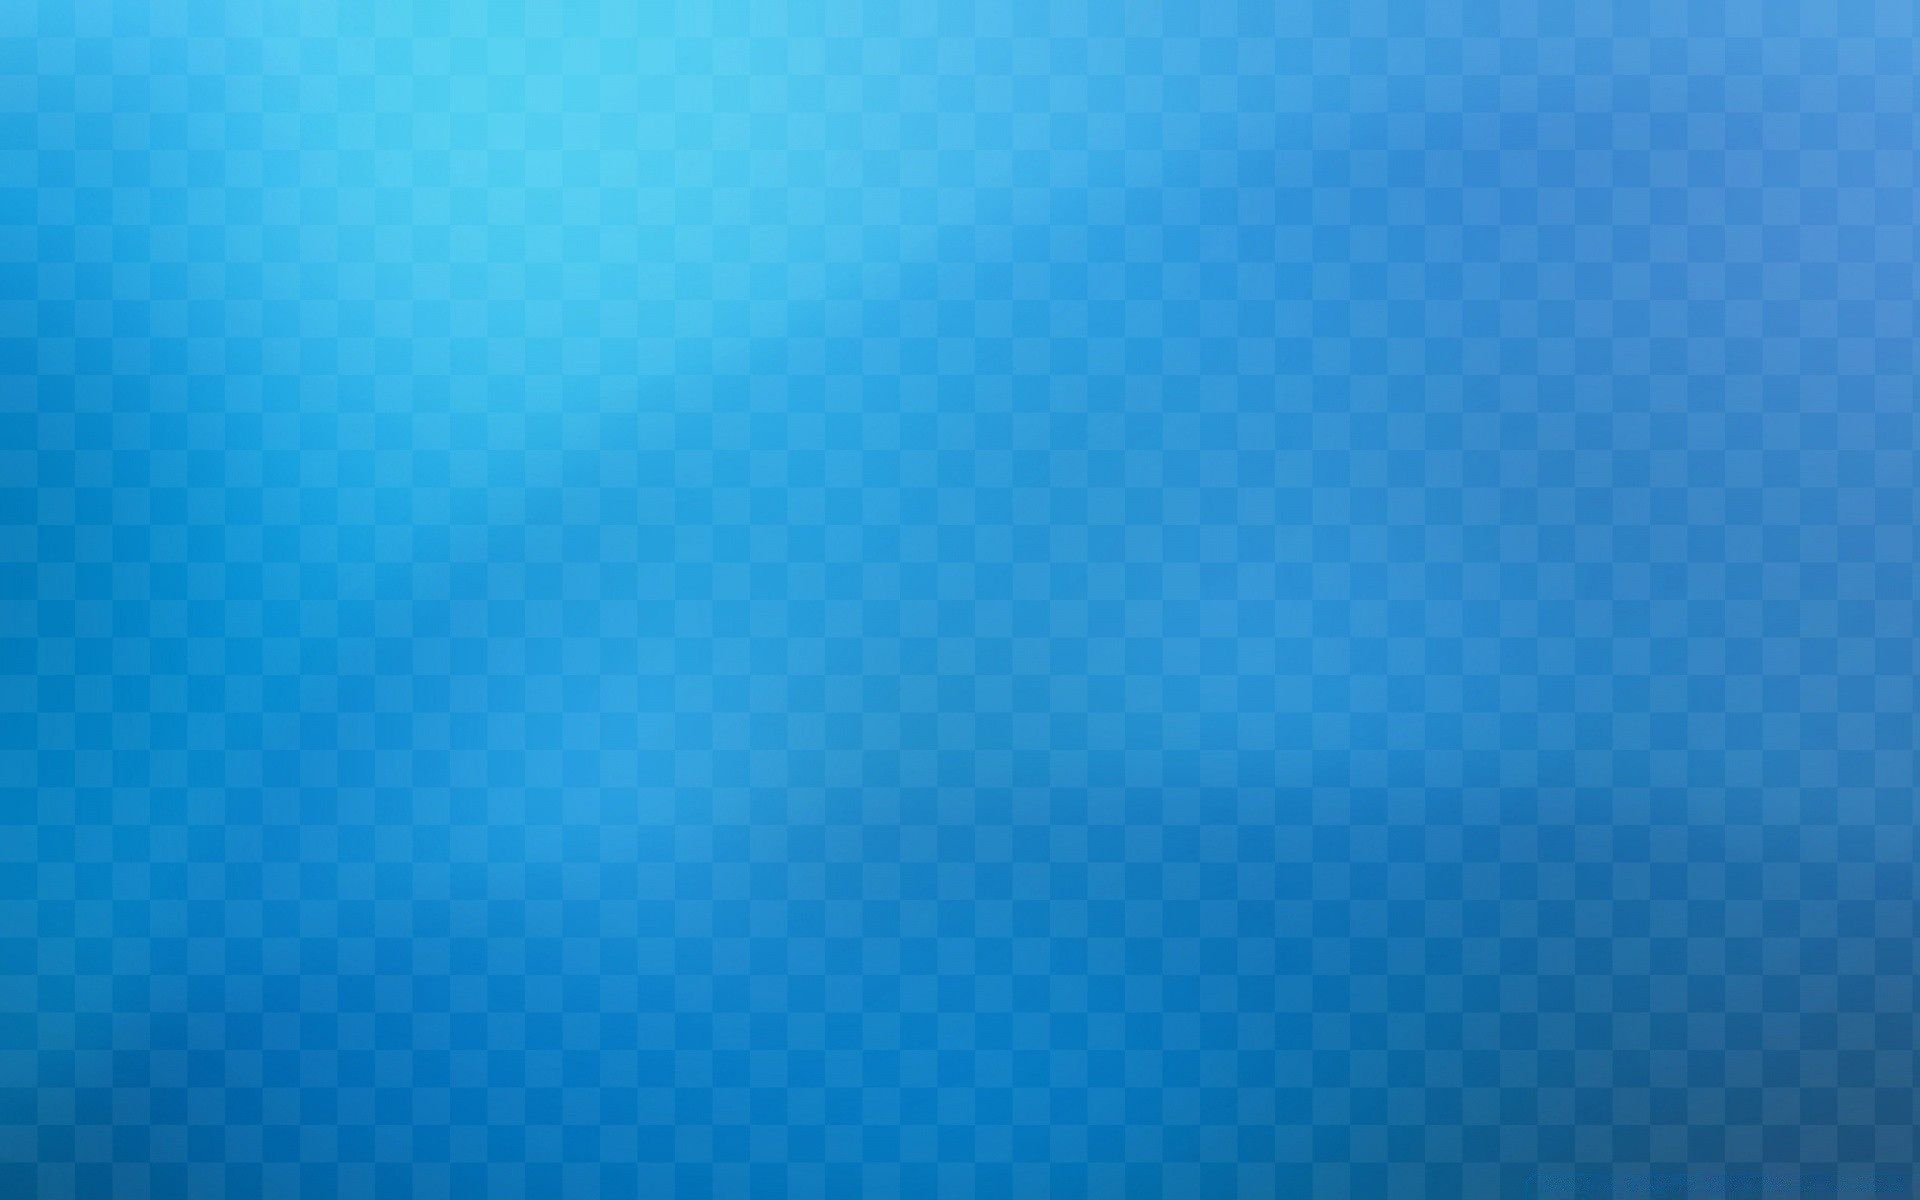 دانلود عکس ساده بافت آبی روشن بدون طرح مناسب تصویر زمینه کامپیوتر و لپتاپ و تبلت 